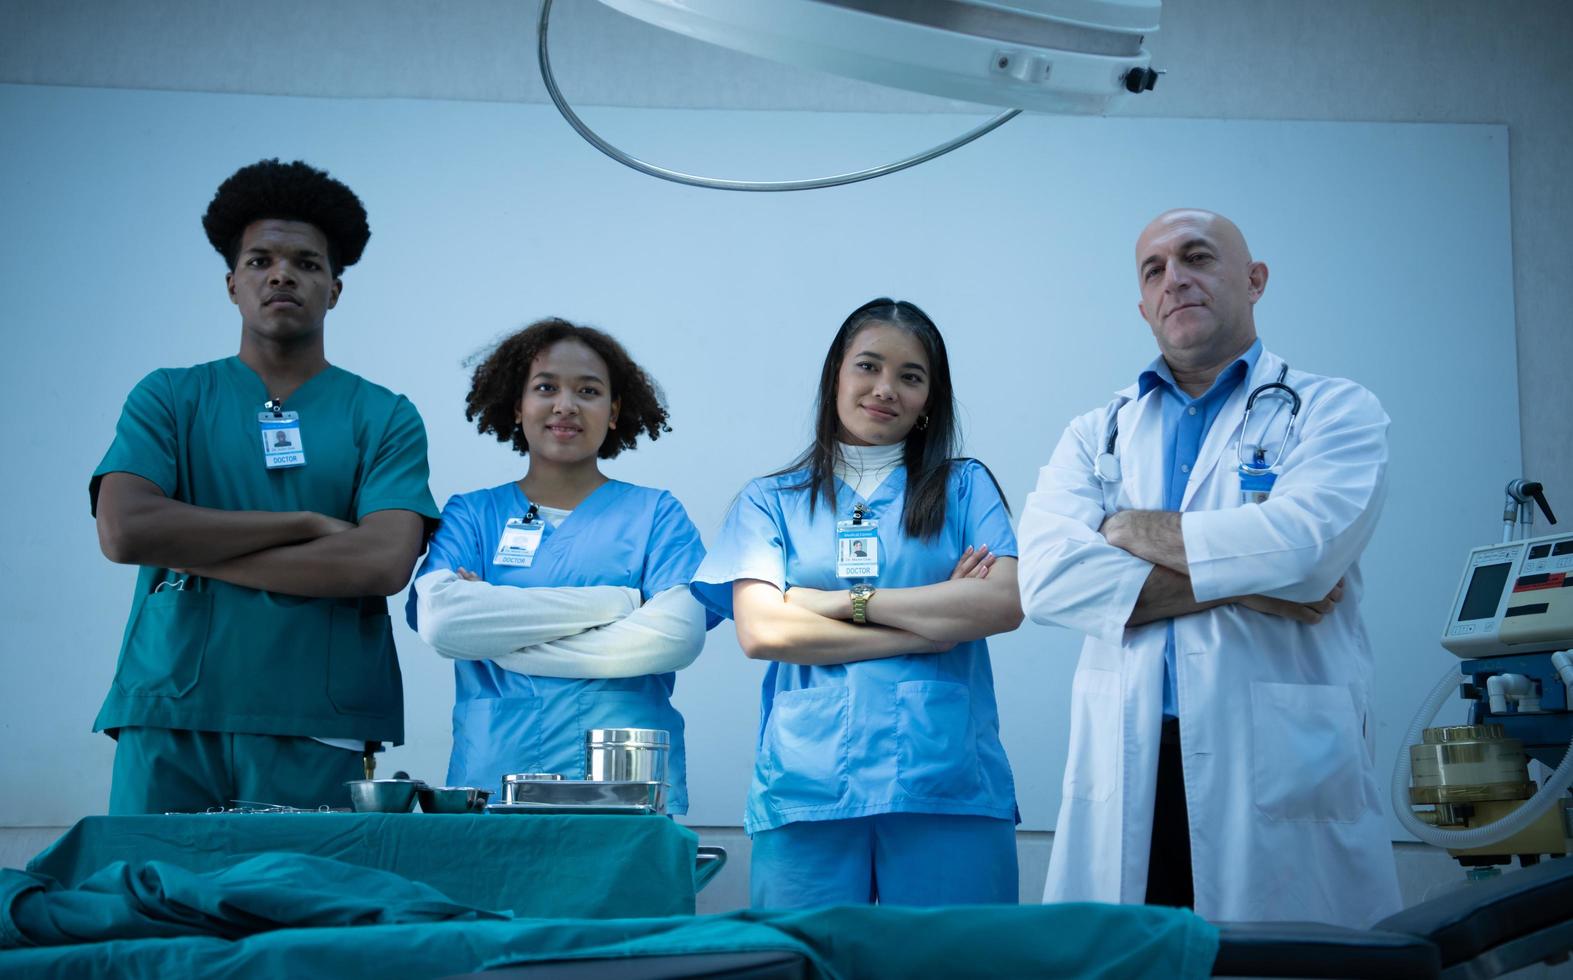 l'équipe de professeurs de médecine et d'étudiants en médecine se prépare avant d'enseigner la chirurgie aux étudiants en médecine photo